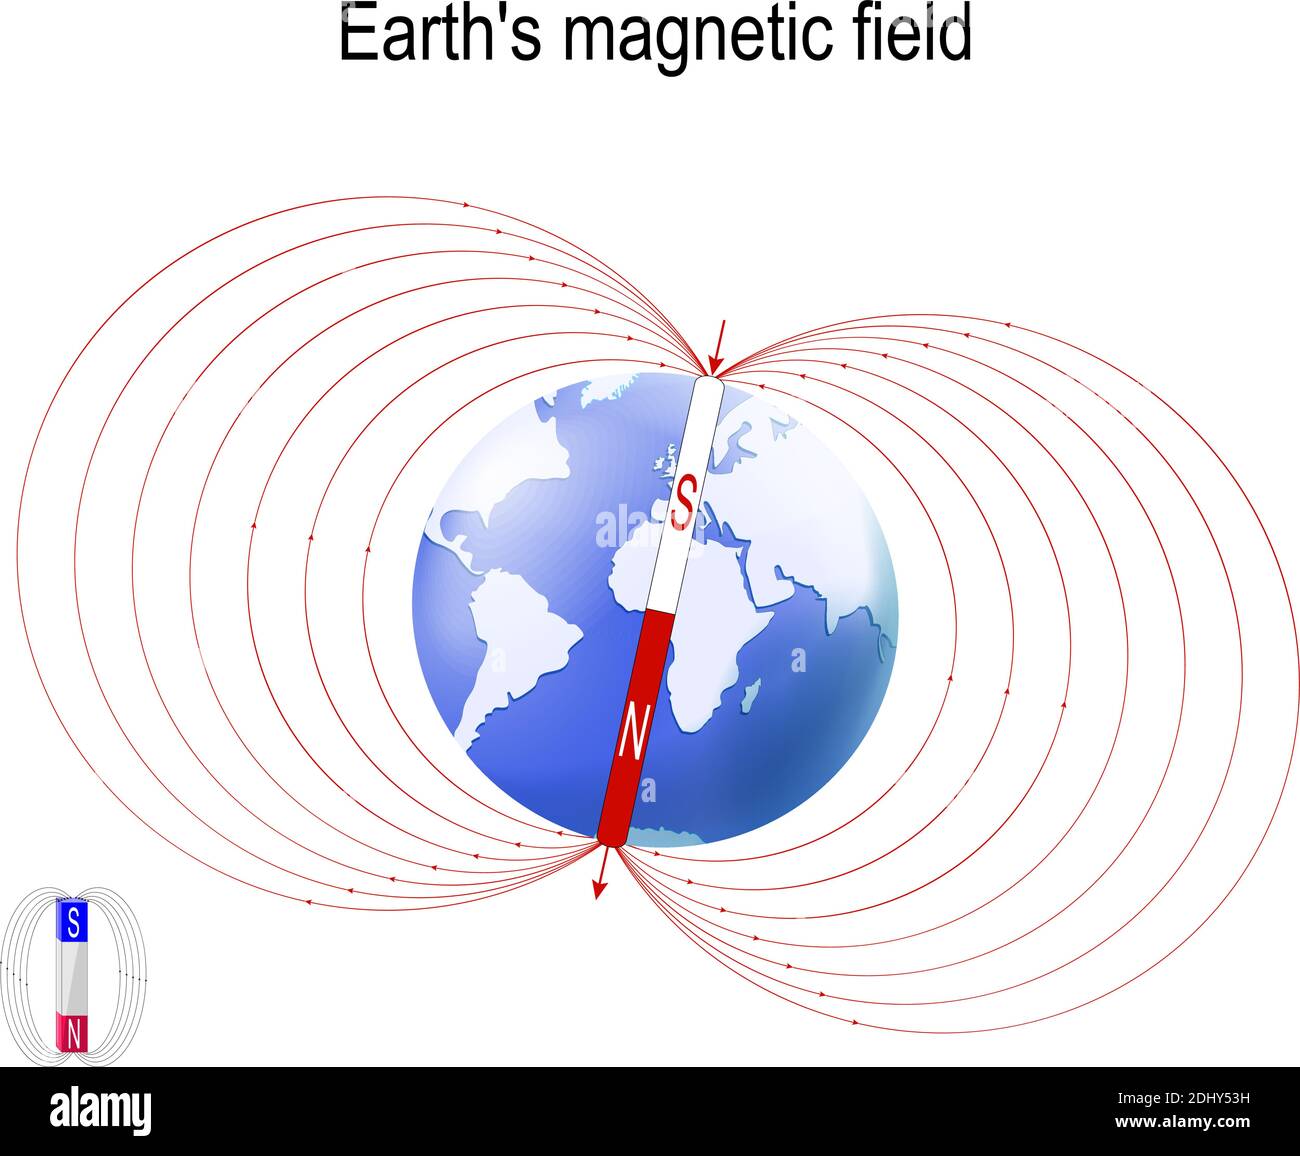 Champ magnétique (géomagnétique) de la Terre. La magnétosphère protège la surface de la Terre des particules chargées du vent solaire et est générée Illustration de Vecteur